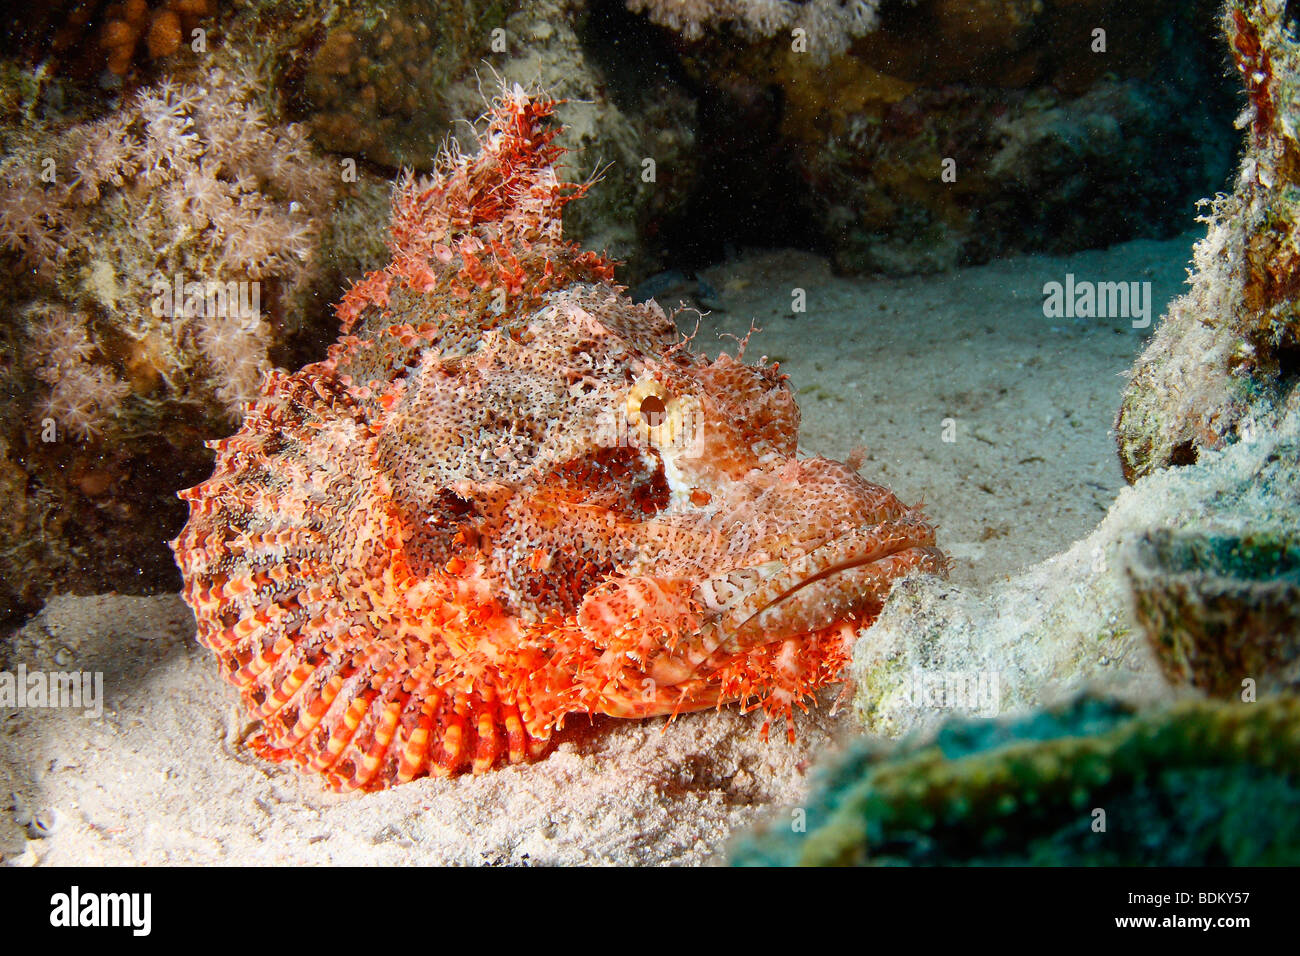 Rot bärtigen hell gefärbt, Drachenkopf auf dem Sandboden im Korallenriff Bildung liegen. Stockfoto